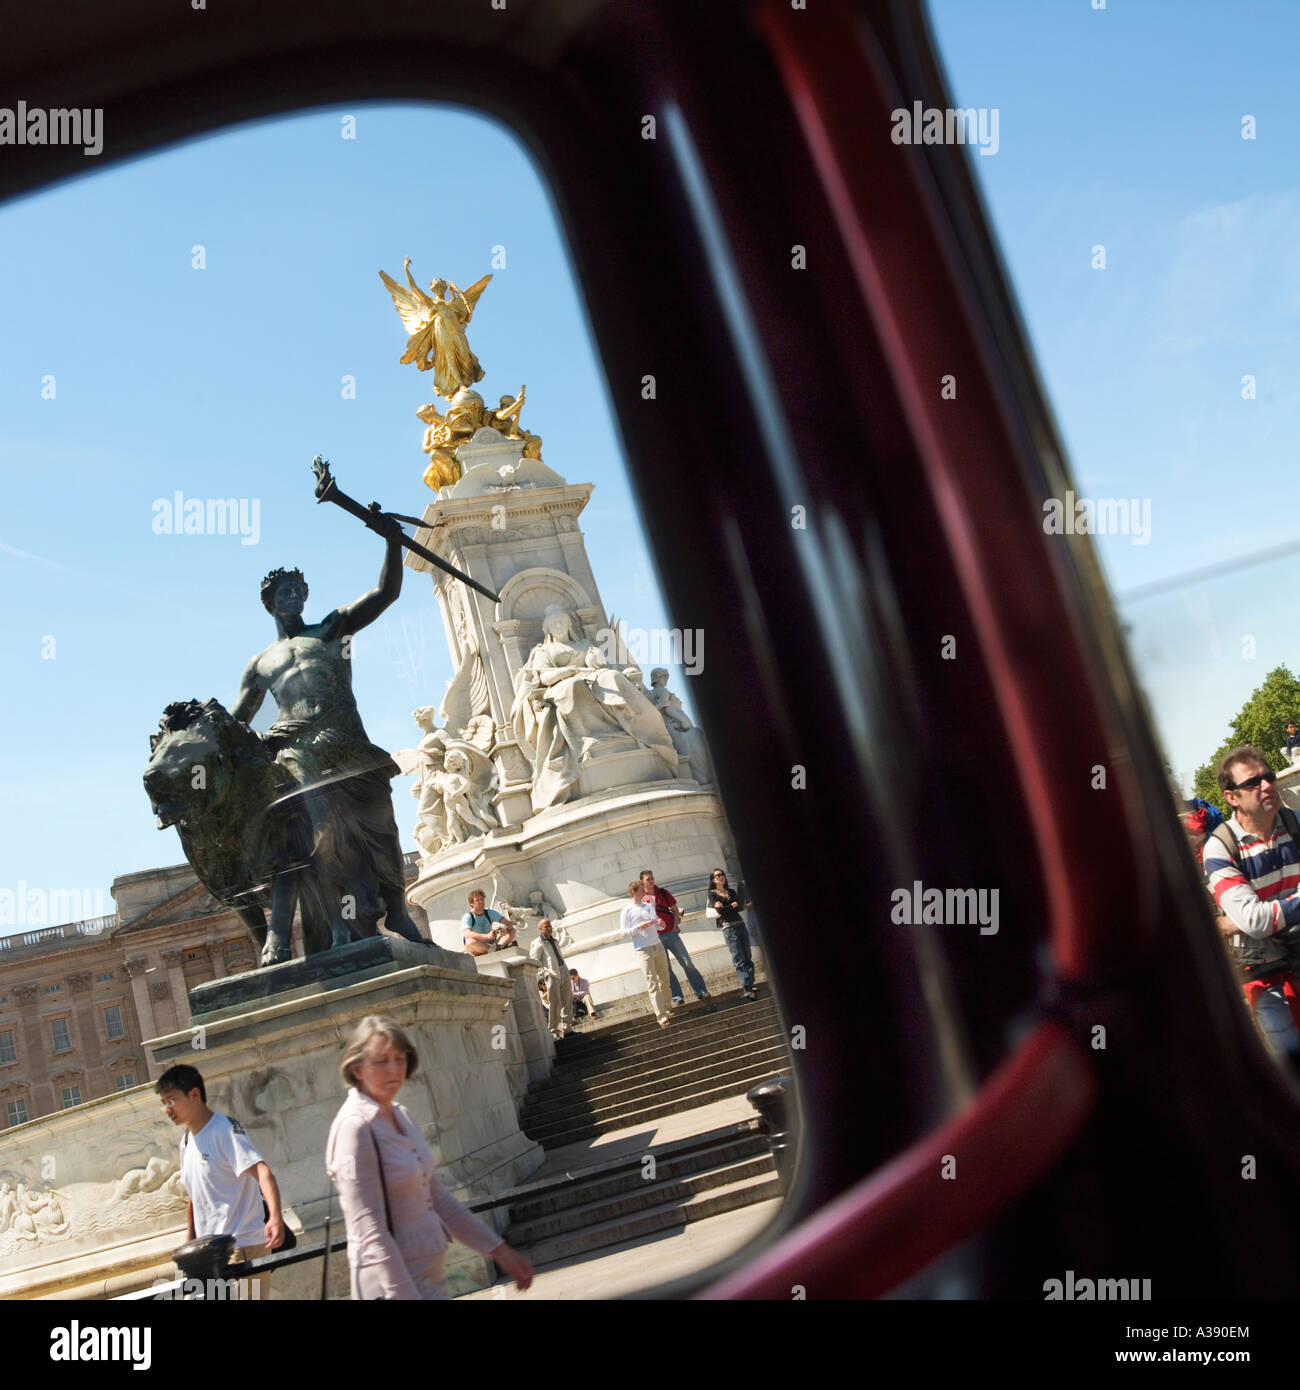 Königin Victoria London England UK Denkmal aus dem Inneren von einem Taxi durch das Fenster vorbei gesehen Stockfoto